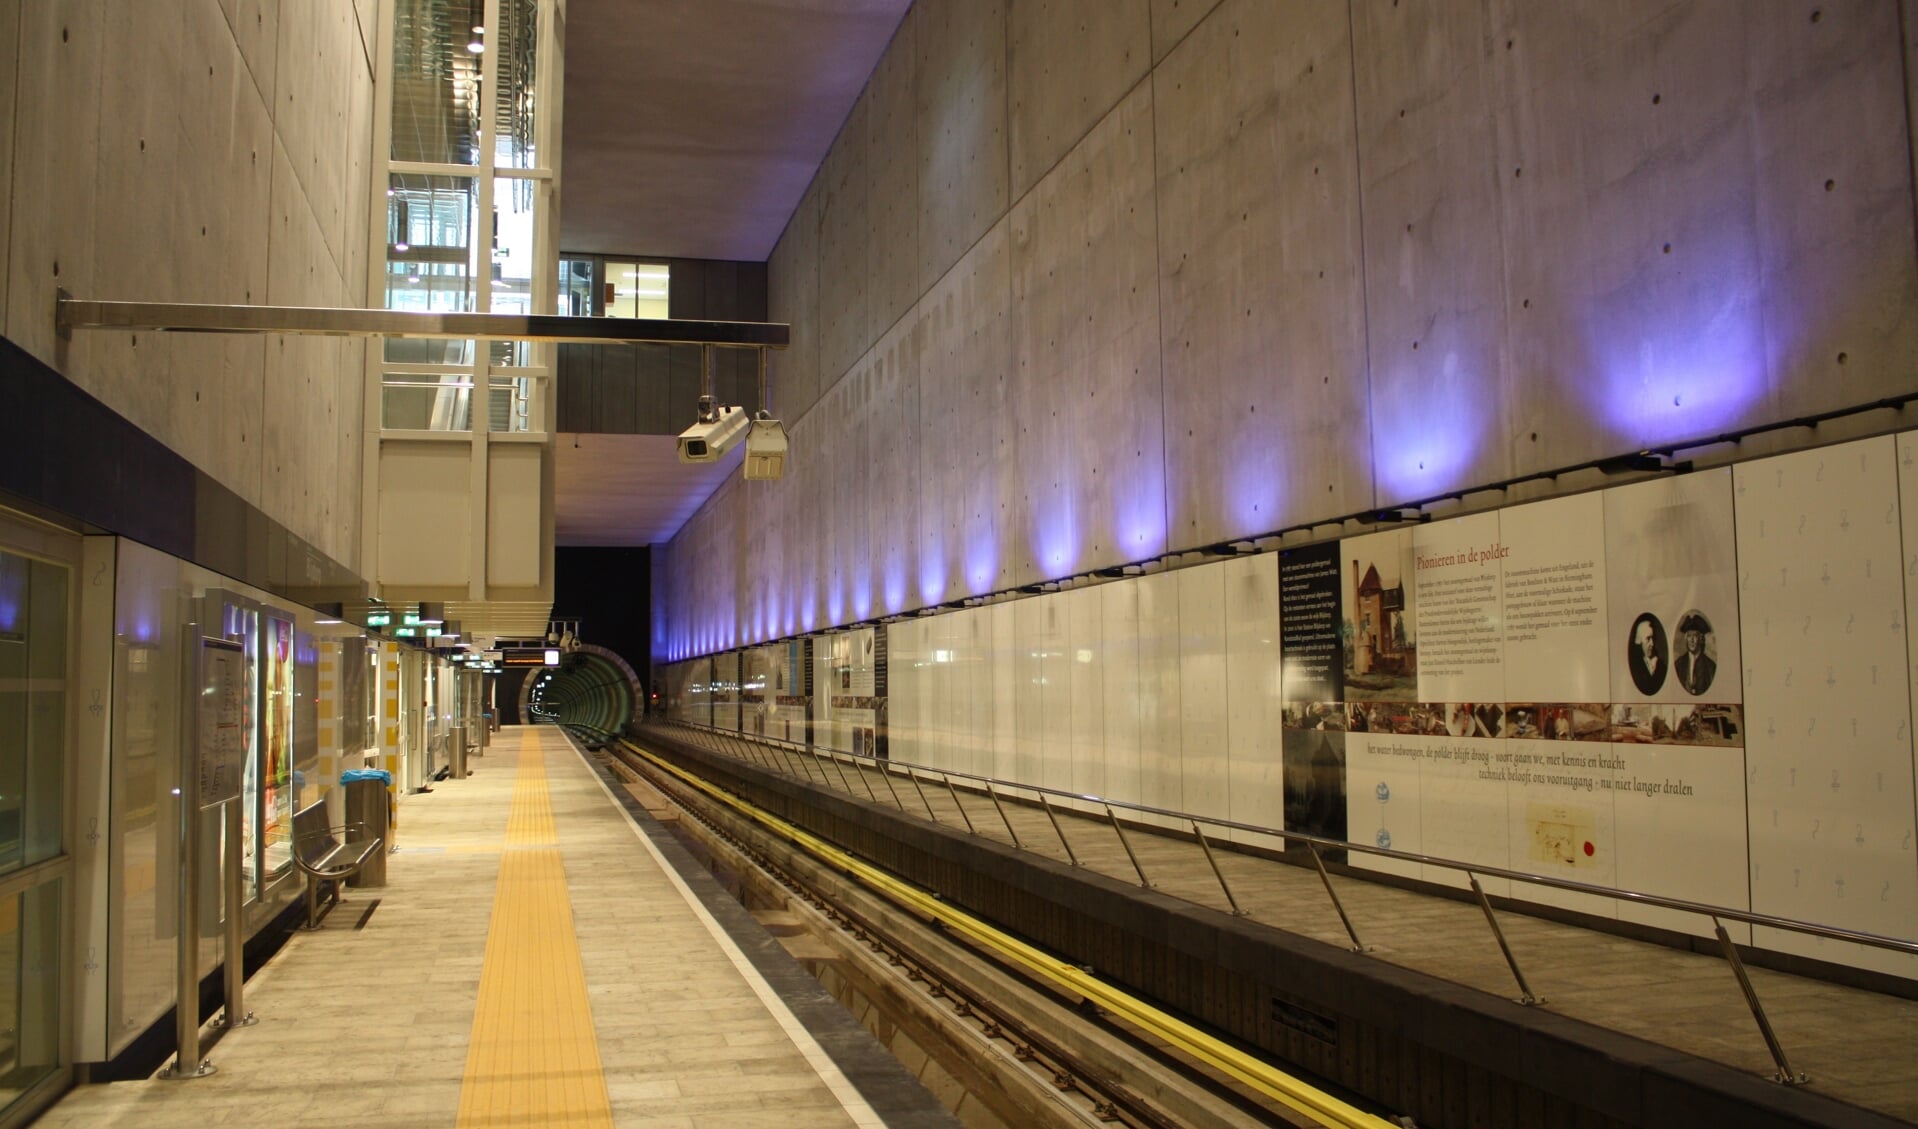 Vanochtend vroeg lag het complete metronetwerk in Rotterdam plat door spanningsproblemen. Foto: RET/Joachim Kost